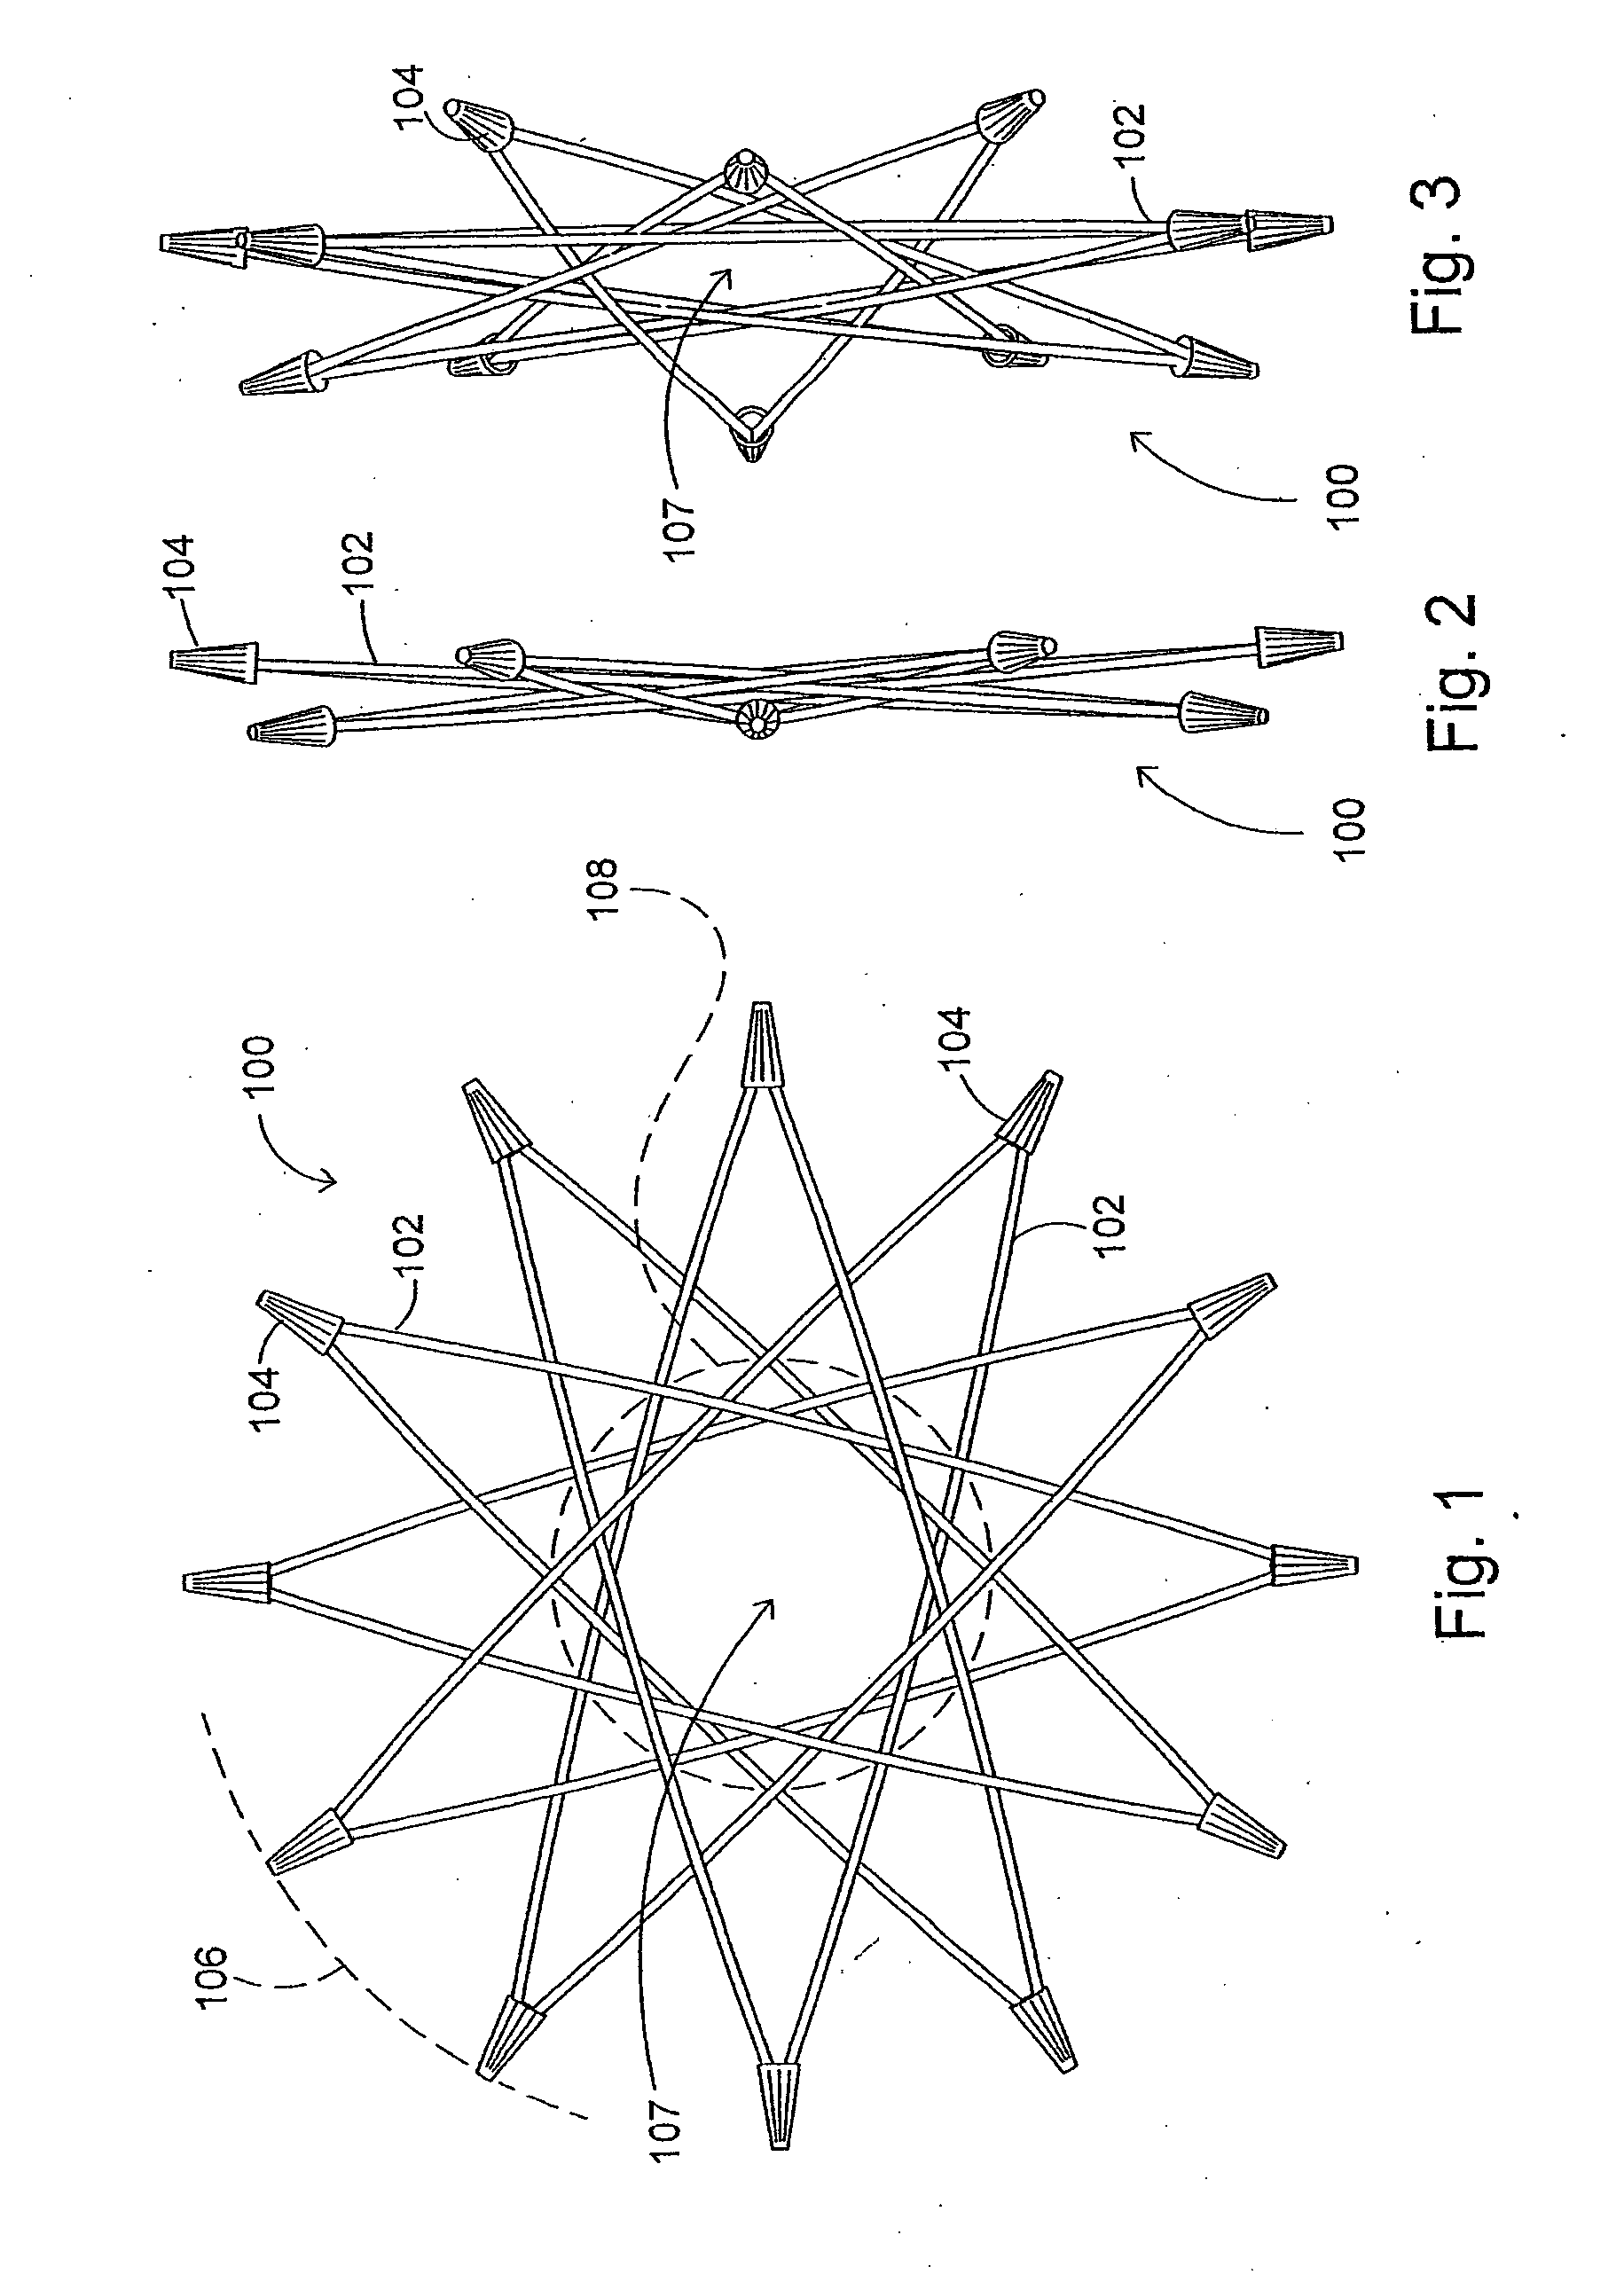 Radial-hinge mechanism